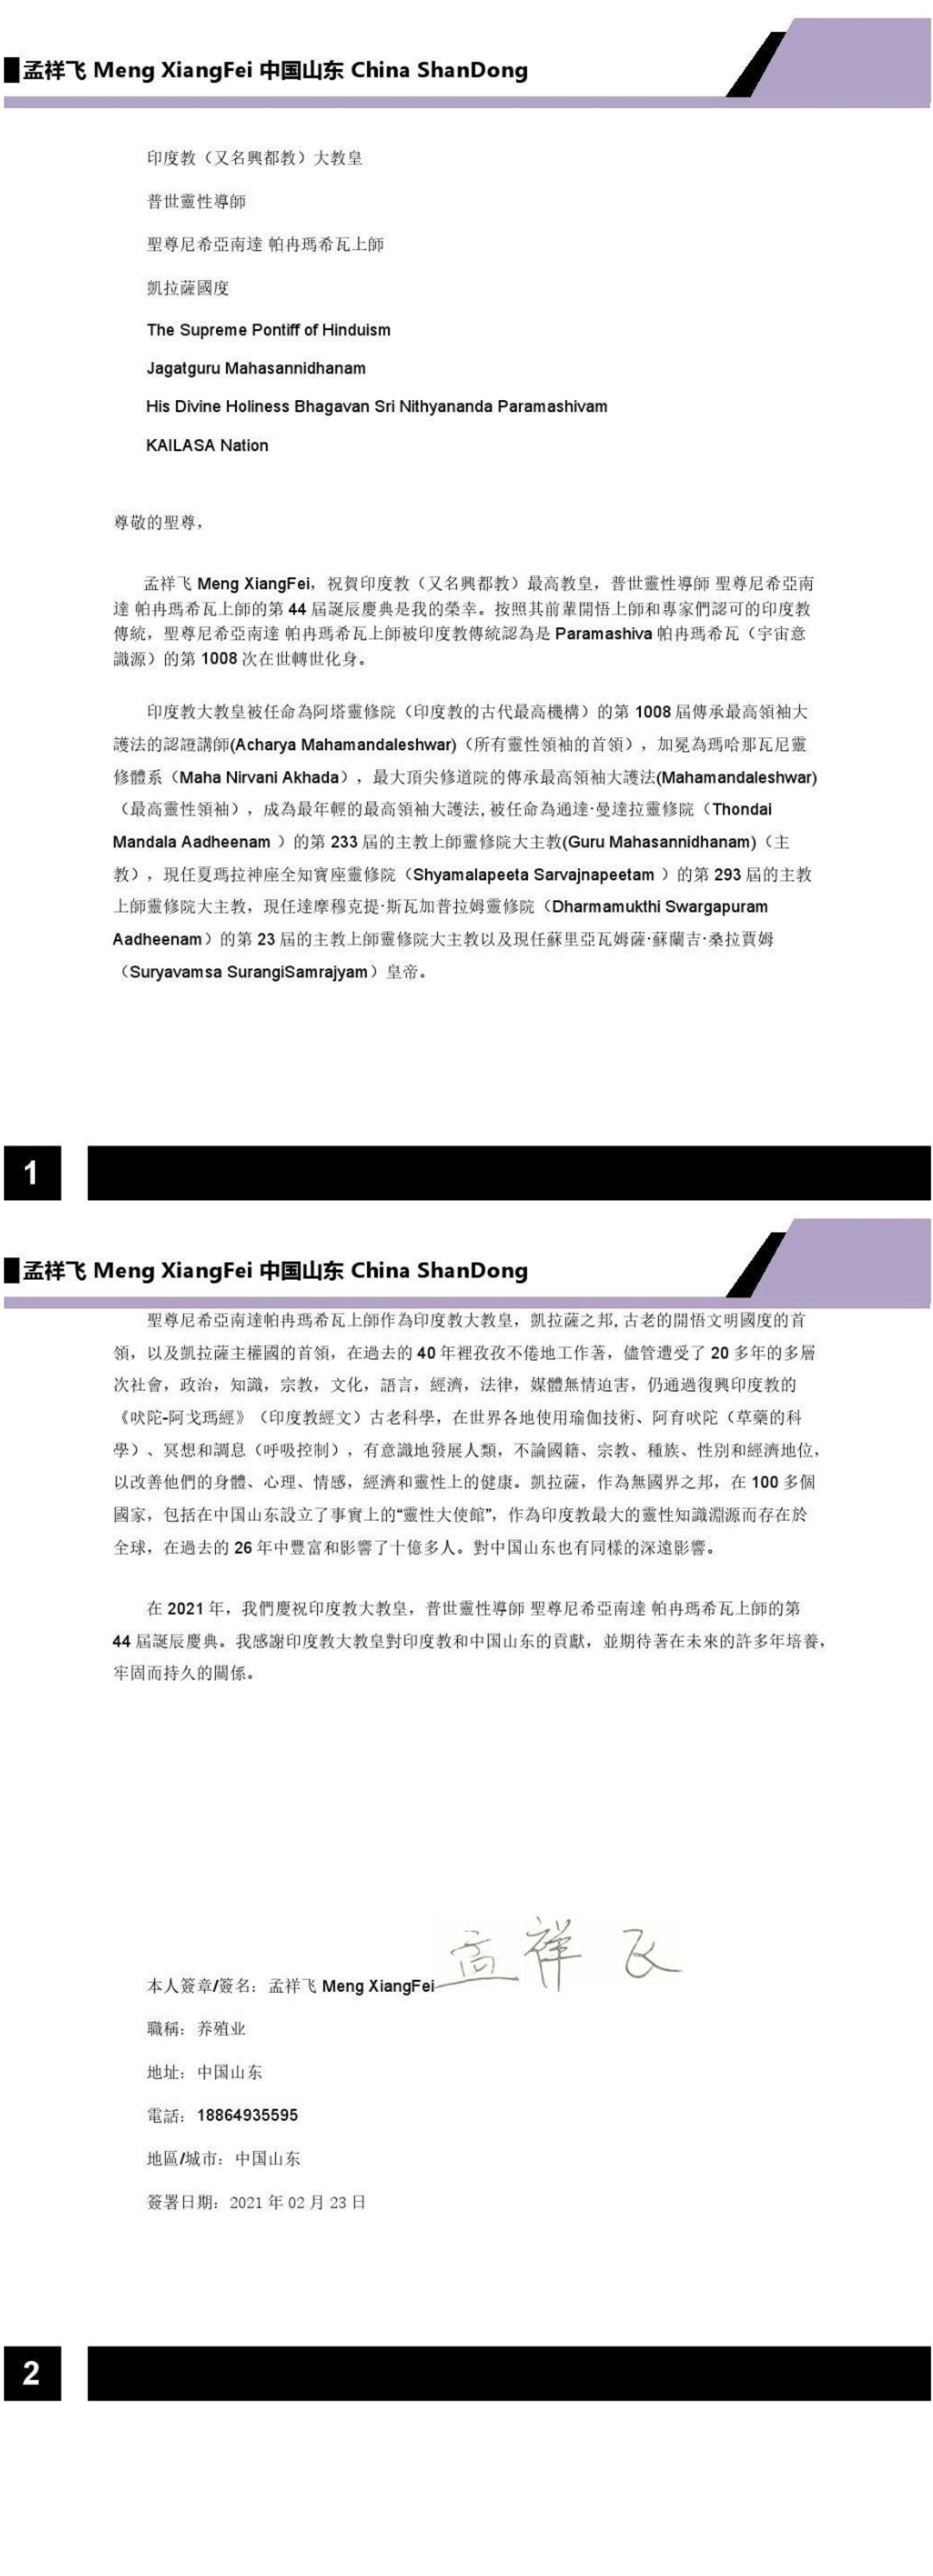 China---Duan-Jia-Li---Feb-21--2021-(Proclamation)-1Mu4BJcVpJsSlJDjTyIVsRasEXvPrvNOp.pdf